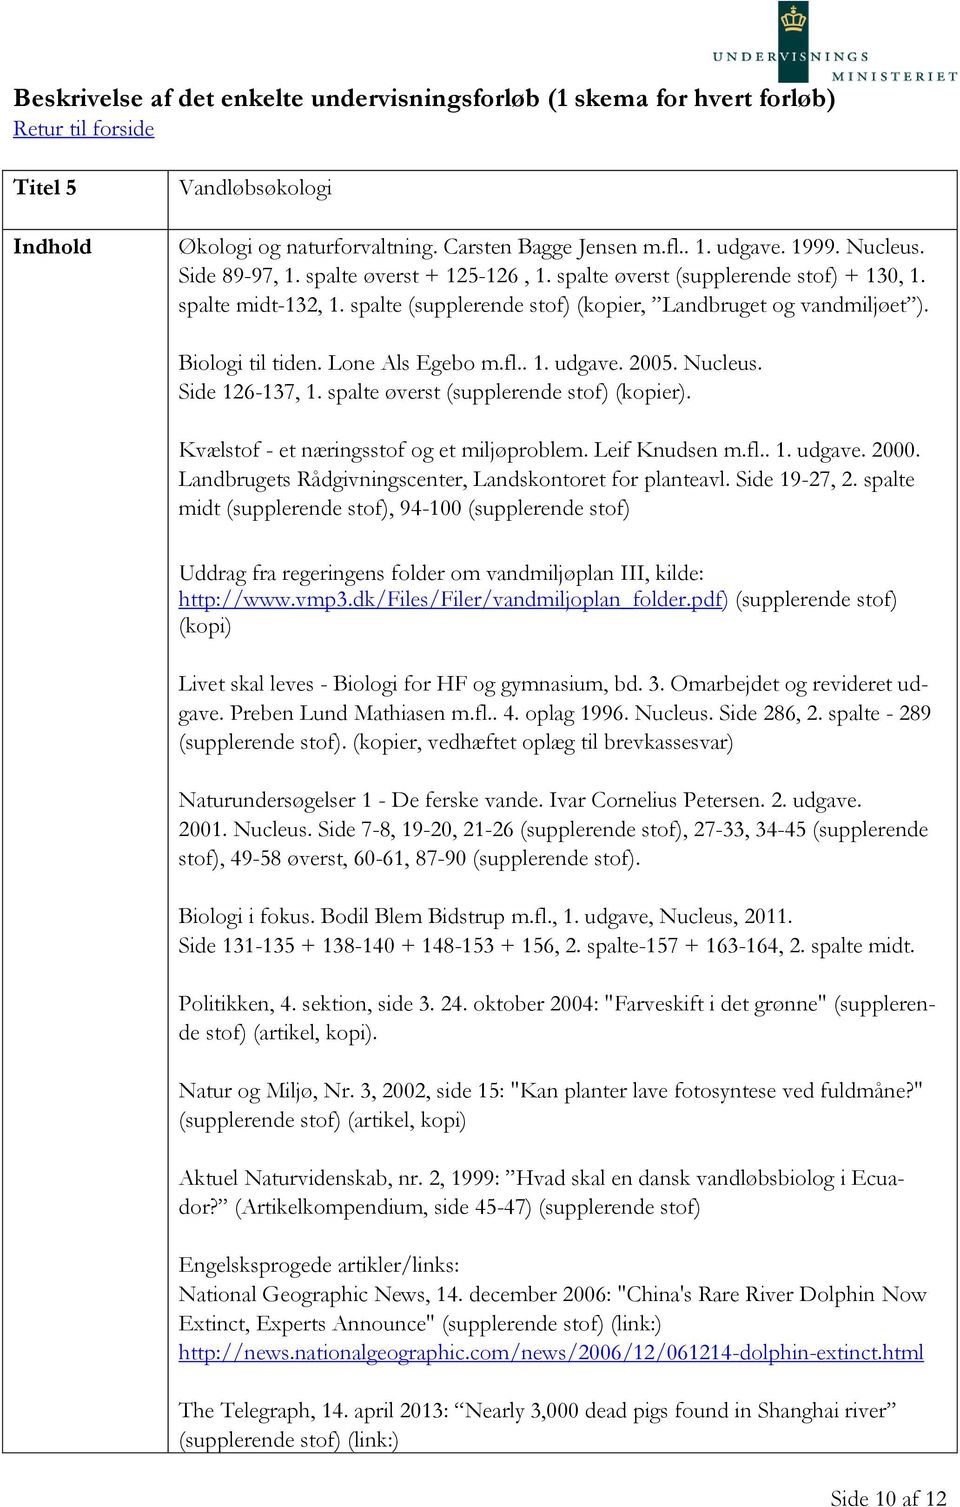 Lone Als Egebo m.fl.. 1. udgave. 2005. Nucleus. Side 126-137, 1. spalte øverst (supplerende stof) (kopier). Kvælstof - et næringsstof og et miljøproblem. Leif Knudsen m.fl.. 1. udgave. 2000.